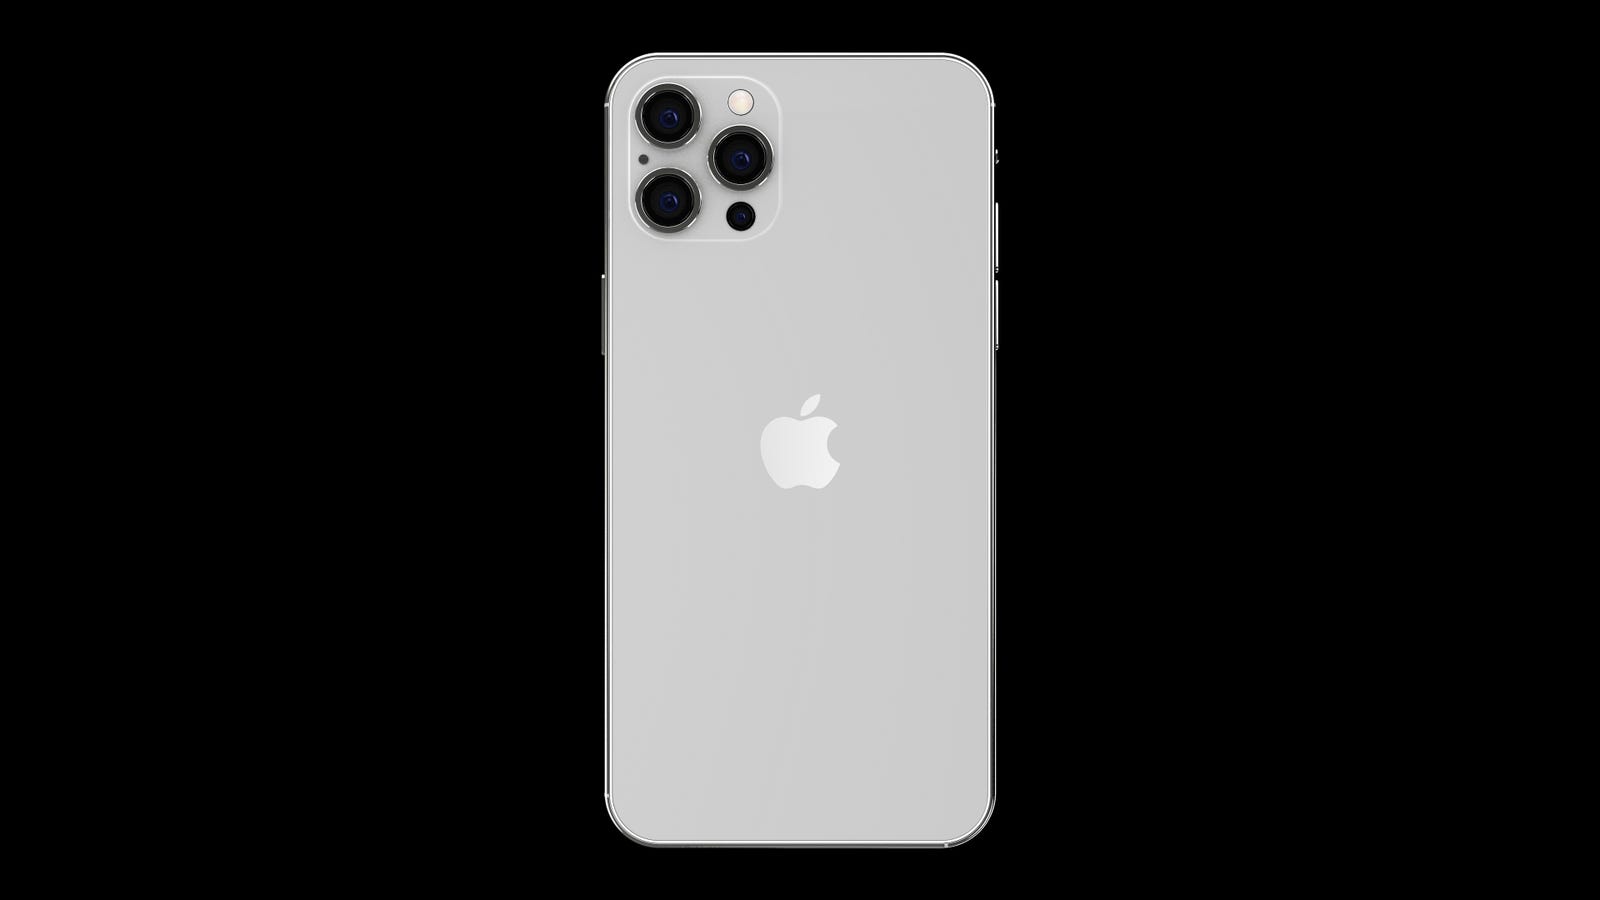 Bạn đang tò mò tìm kiếm những bức ảnh mới nhất về chiếc iPhone 12 Pro Max? Hãy xem qua bộ sưu tập ảnh này và đắm chìm trong sự hoàn hảo của thiết kế công nghệ hàng đầu của Apple.